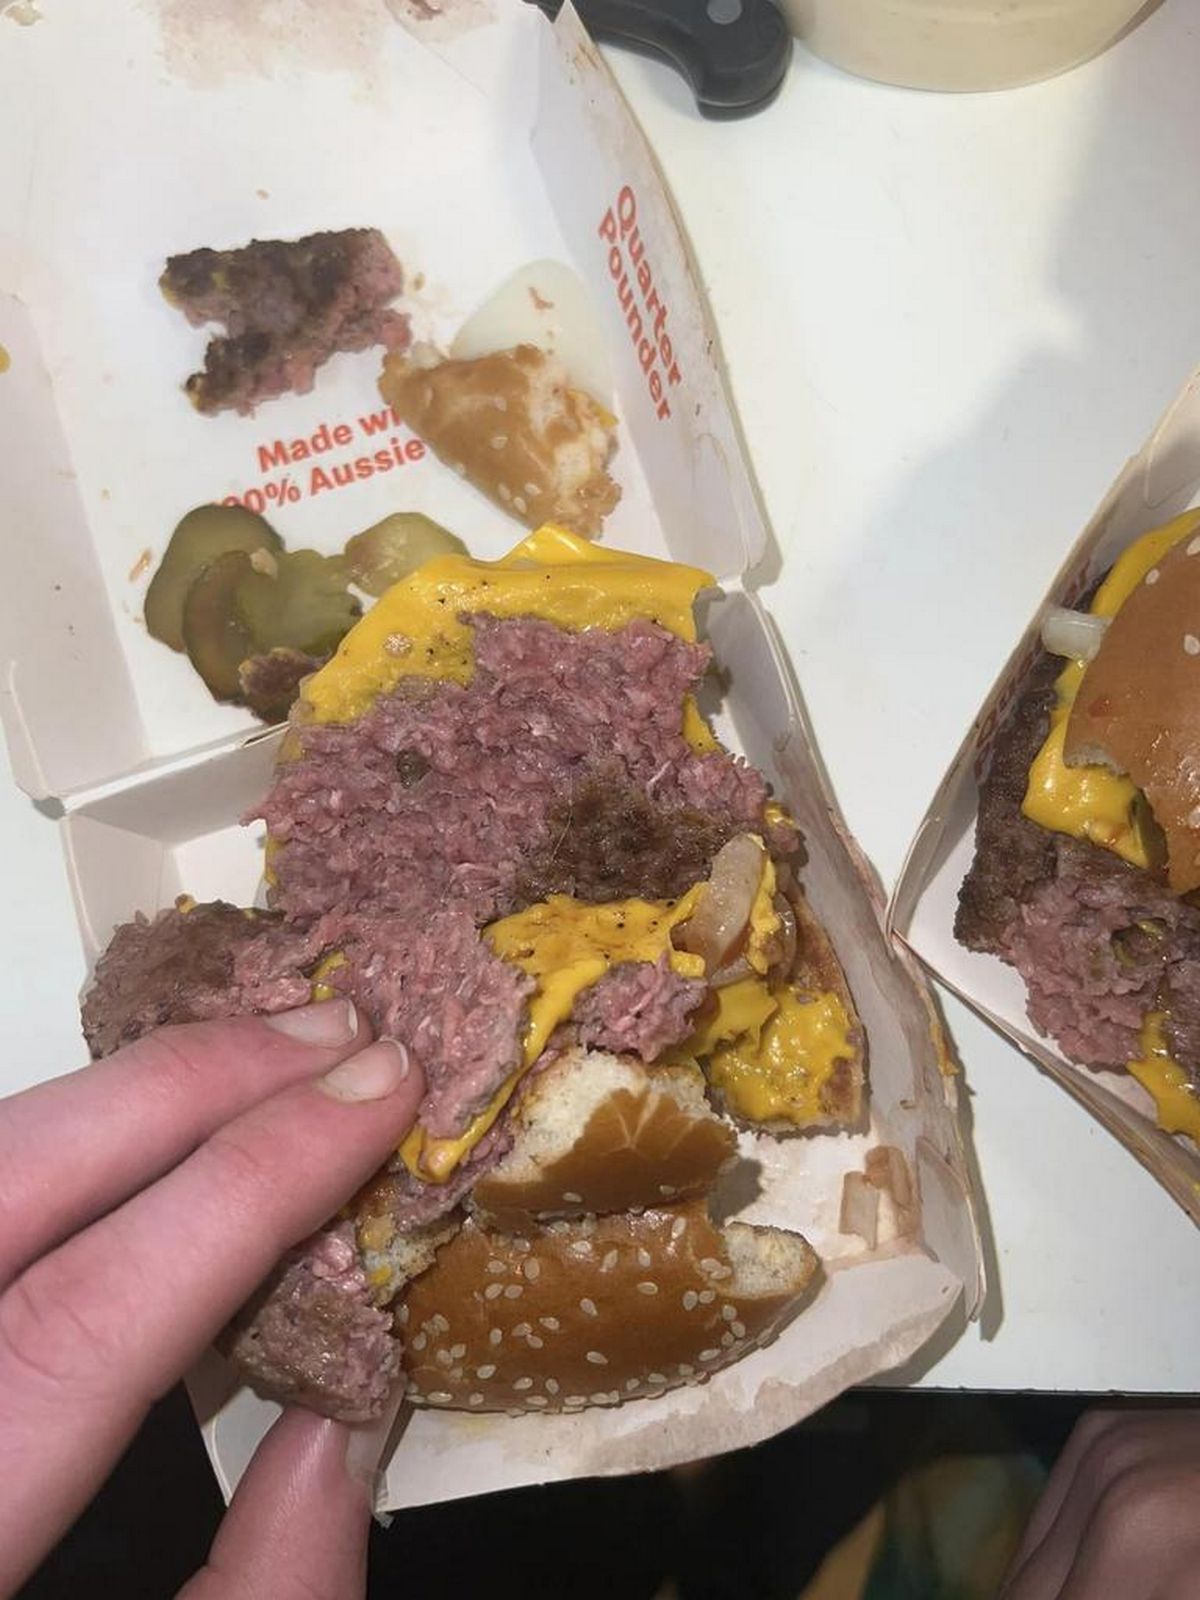 Après avoir pris une bouchée d’un burger, un client a exprimé son mécontentement à McDonald’s en découvrant que la viande n’était pas cuite.